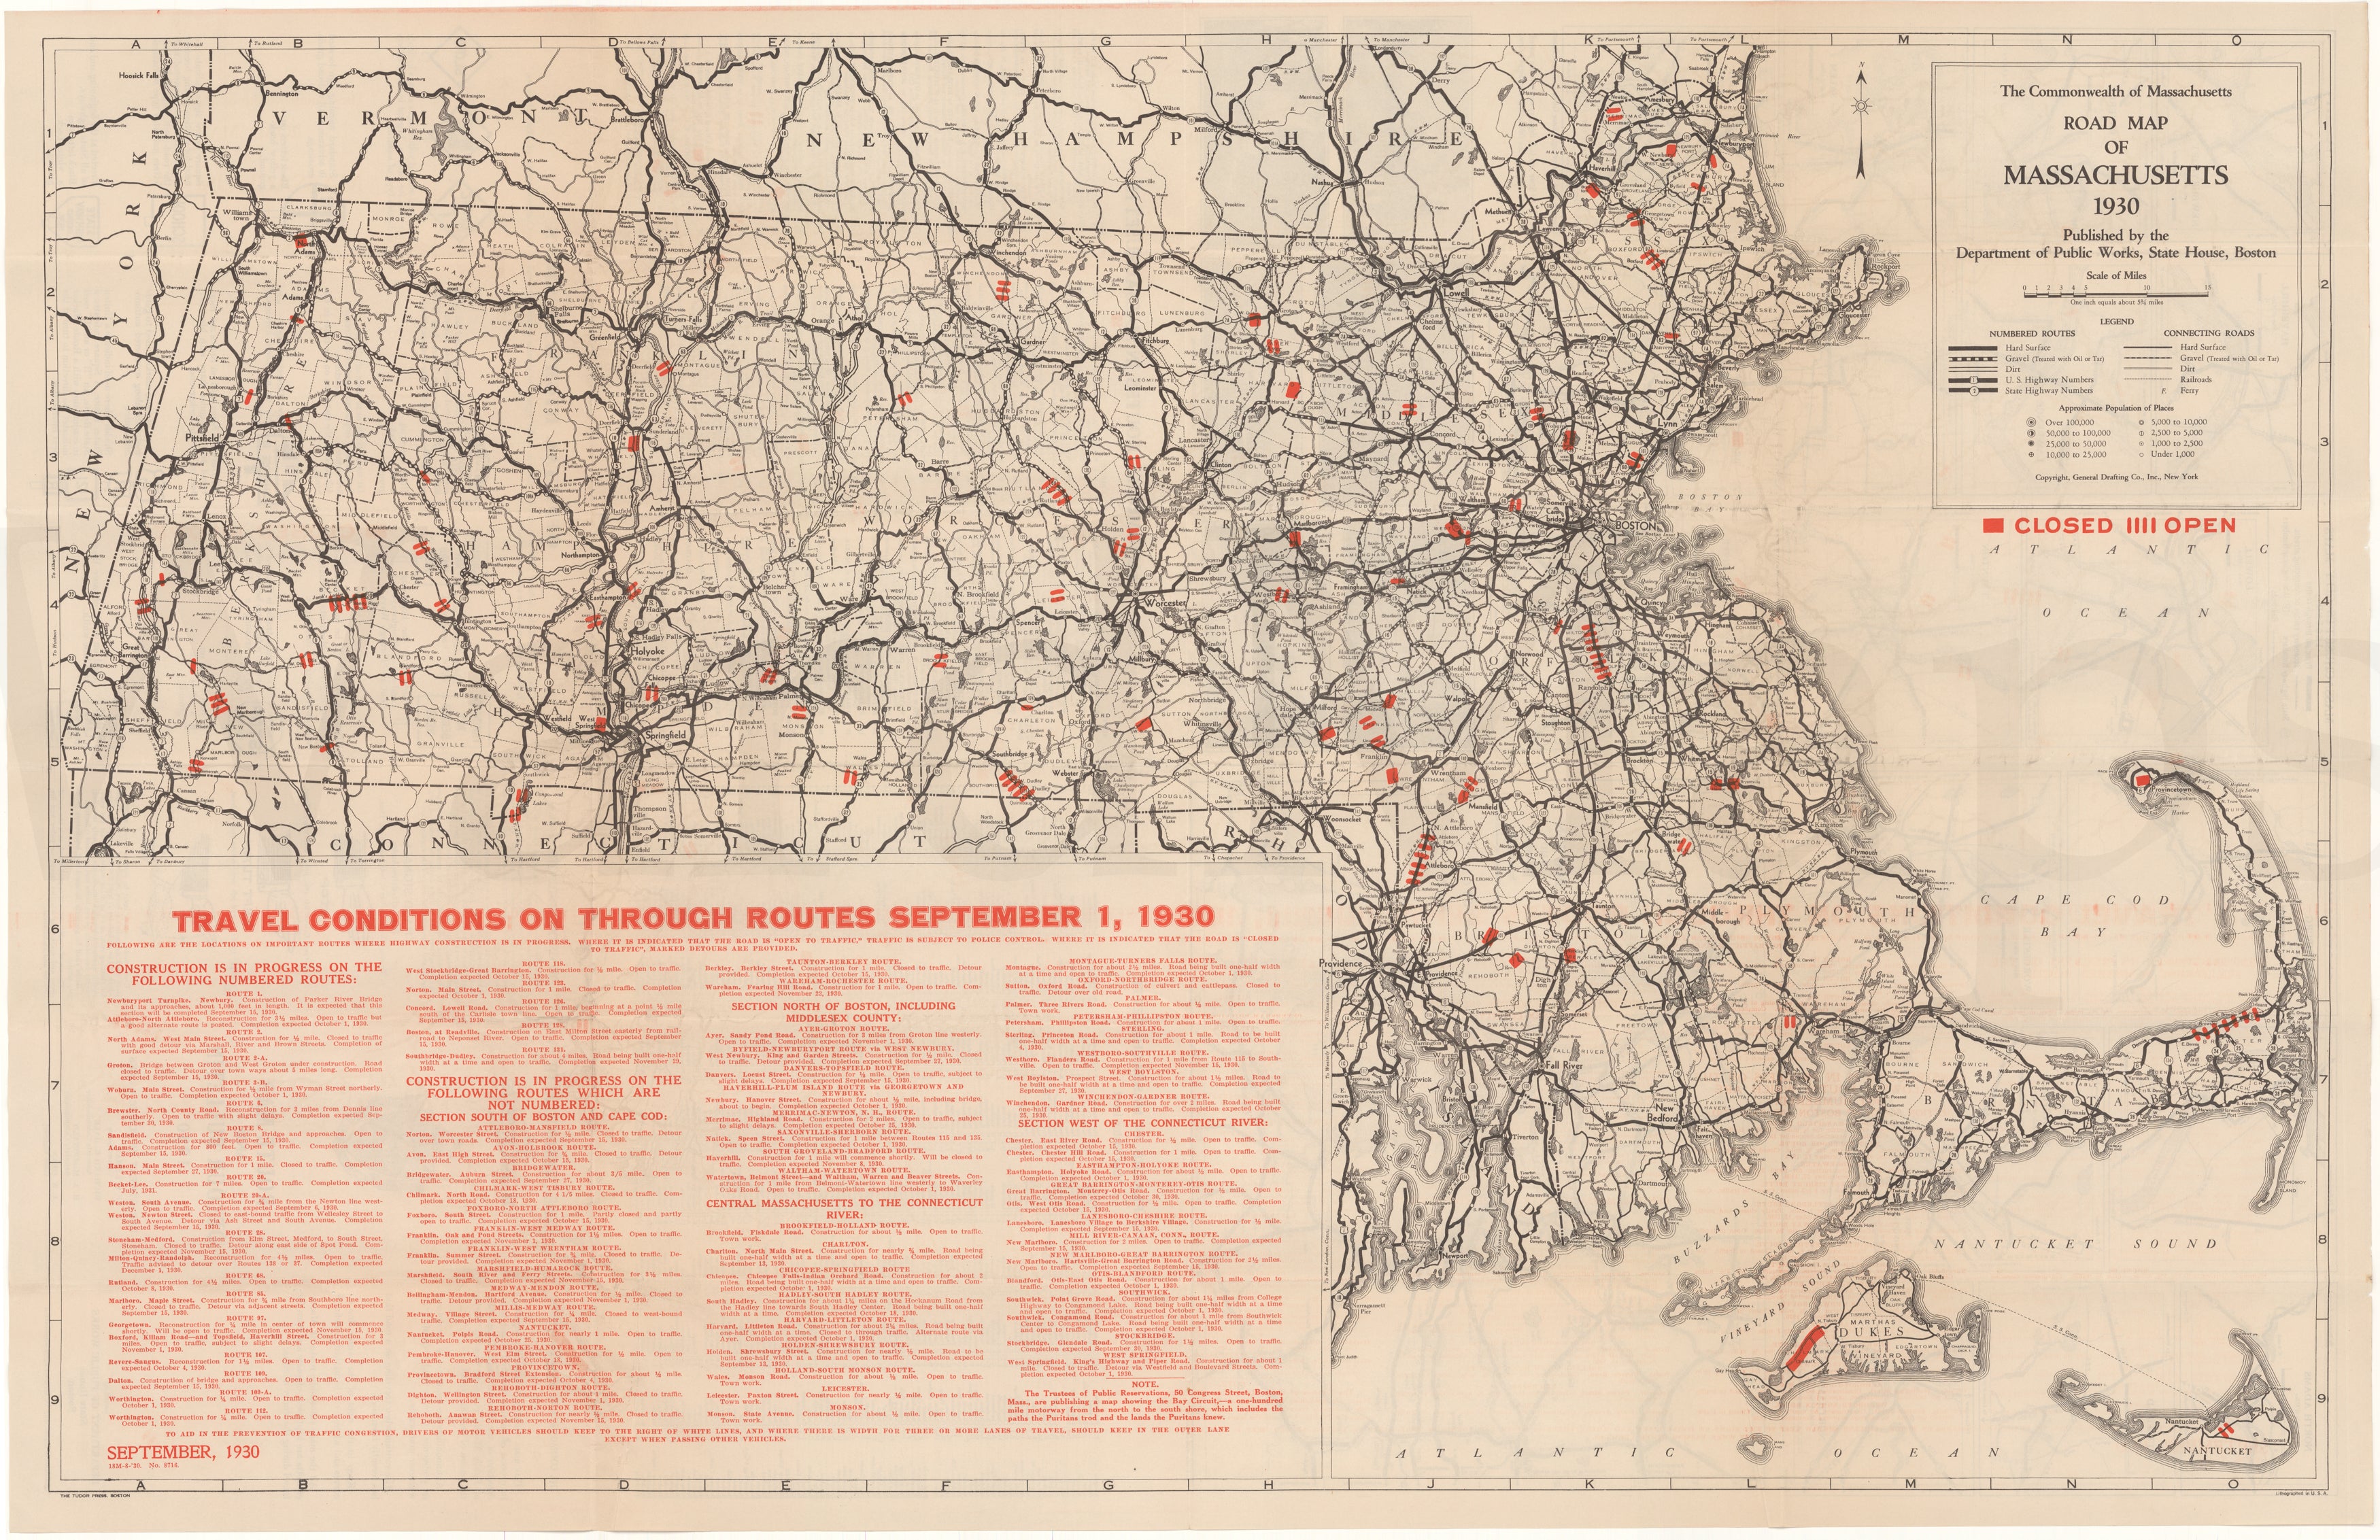 Massachusetts 1930: Road Map